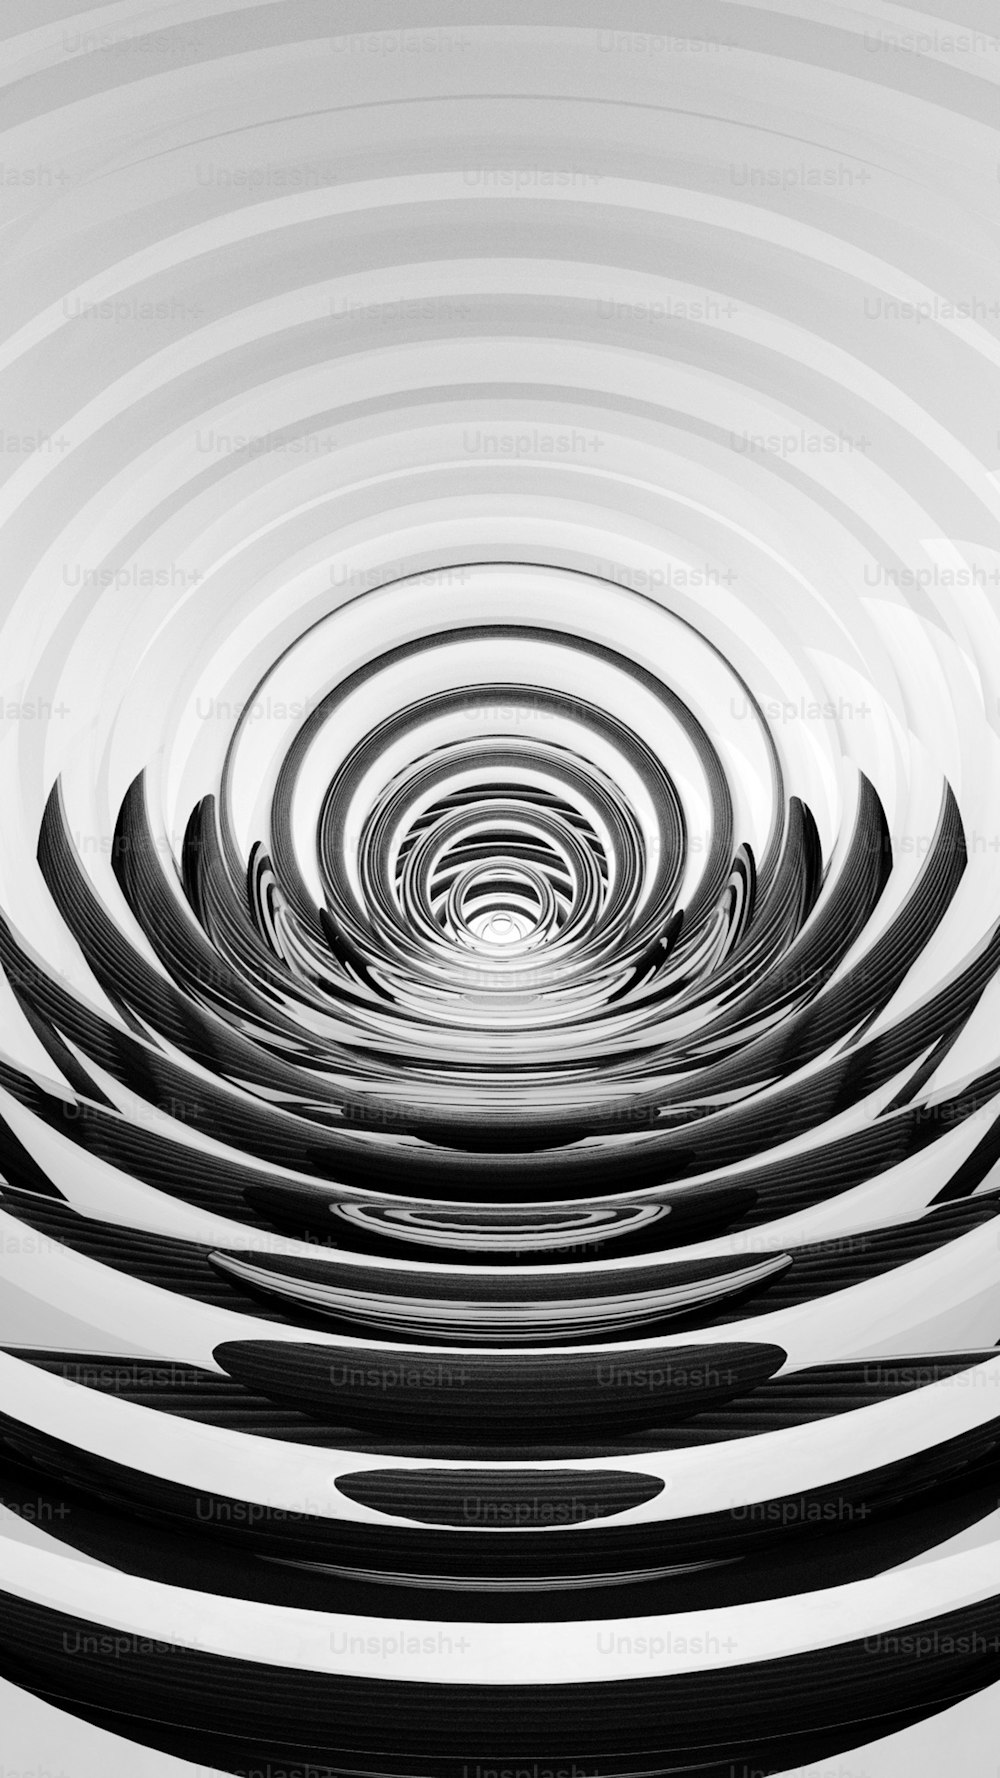 円形の物体の白黒写真